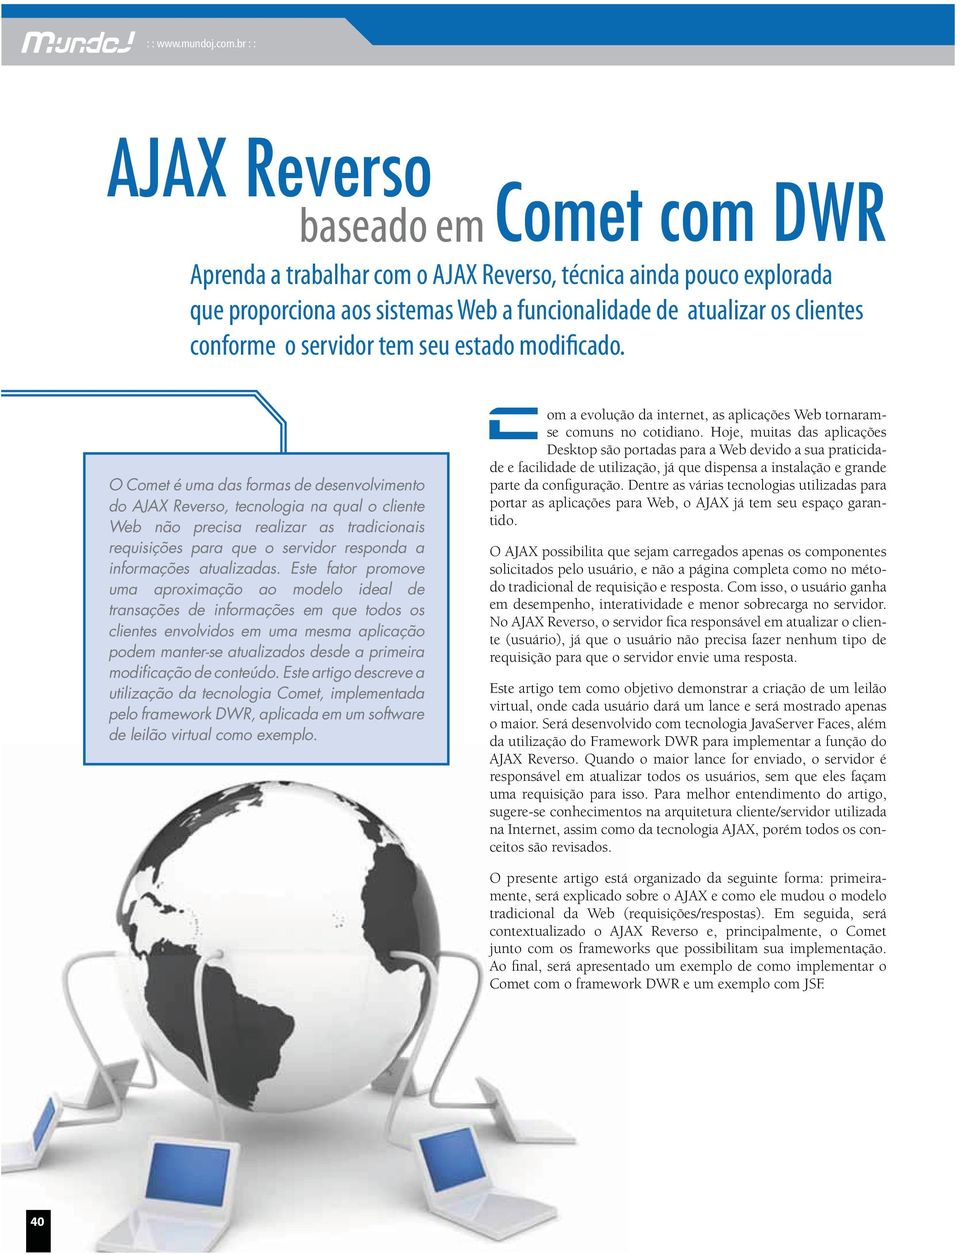 O Comet é uma das formas de desenvolvimento do AJAX Reverso, tecnologia na qual o cliente Web não precisa realizar as tradicionais requisições para que o servidor responda a informações atualizadas.